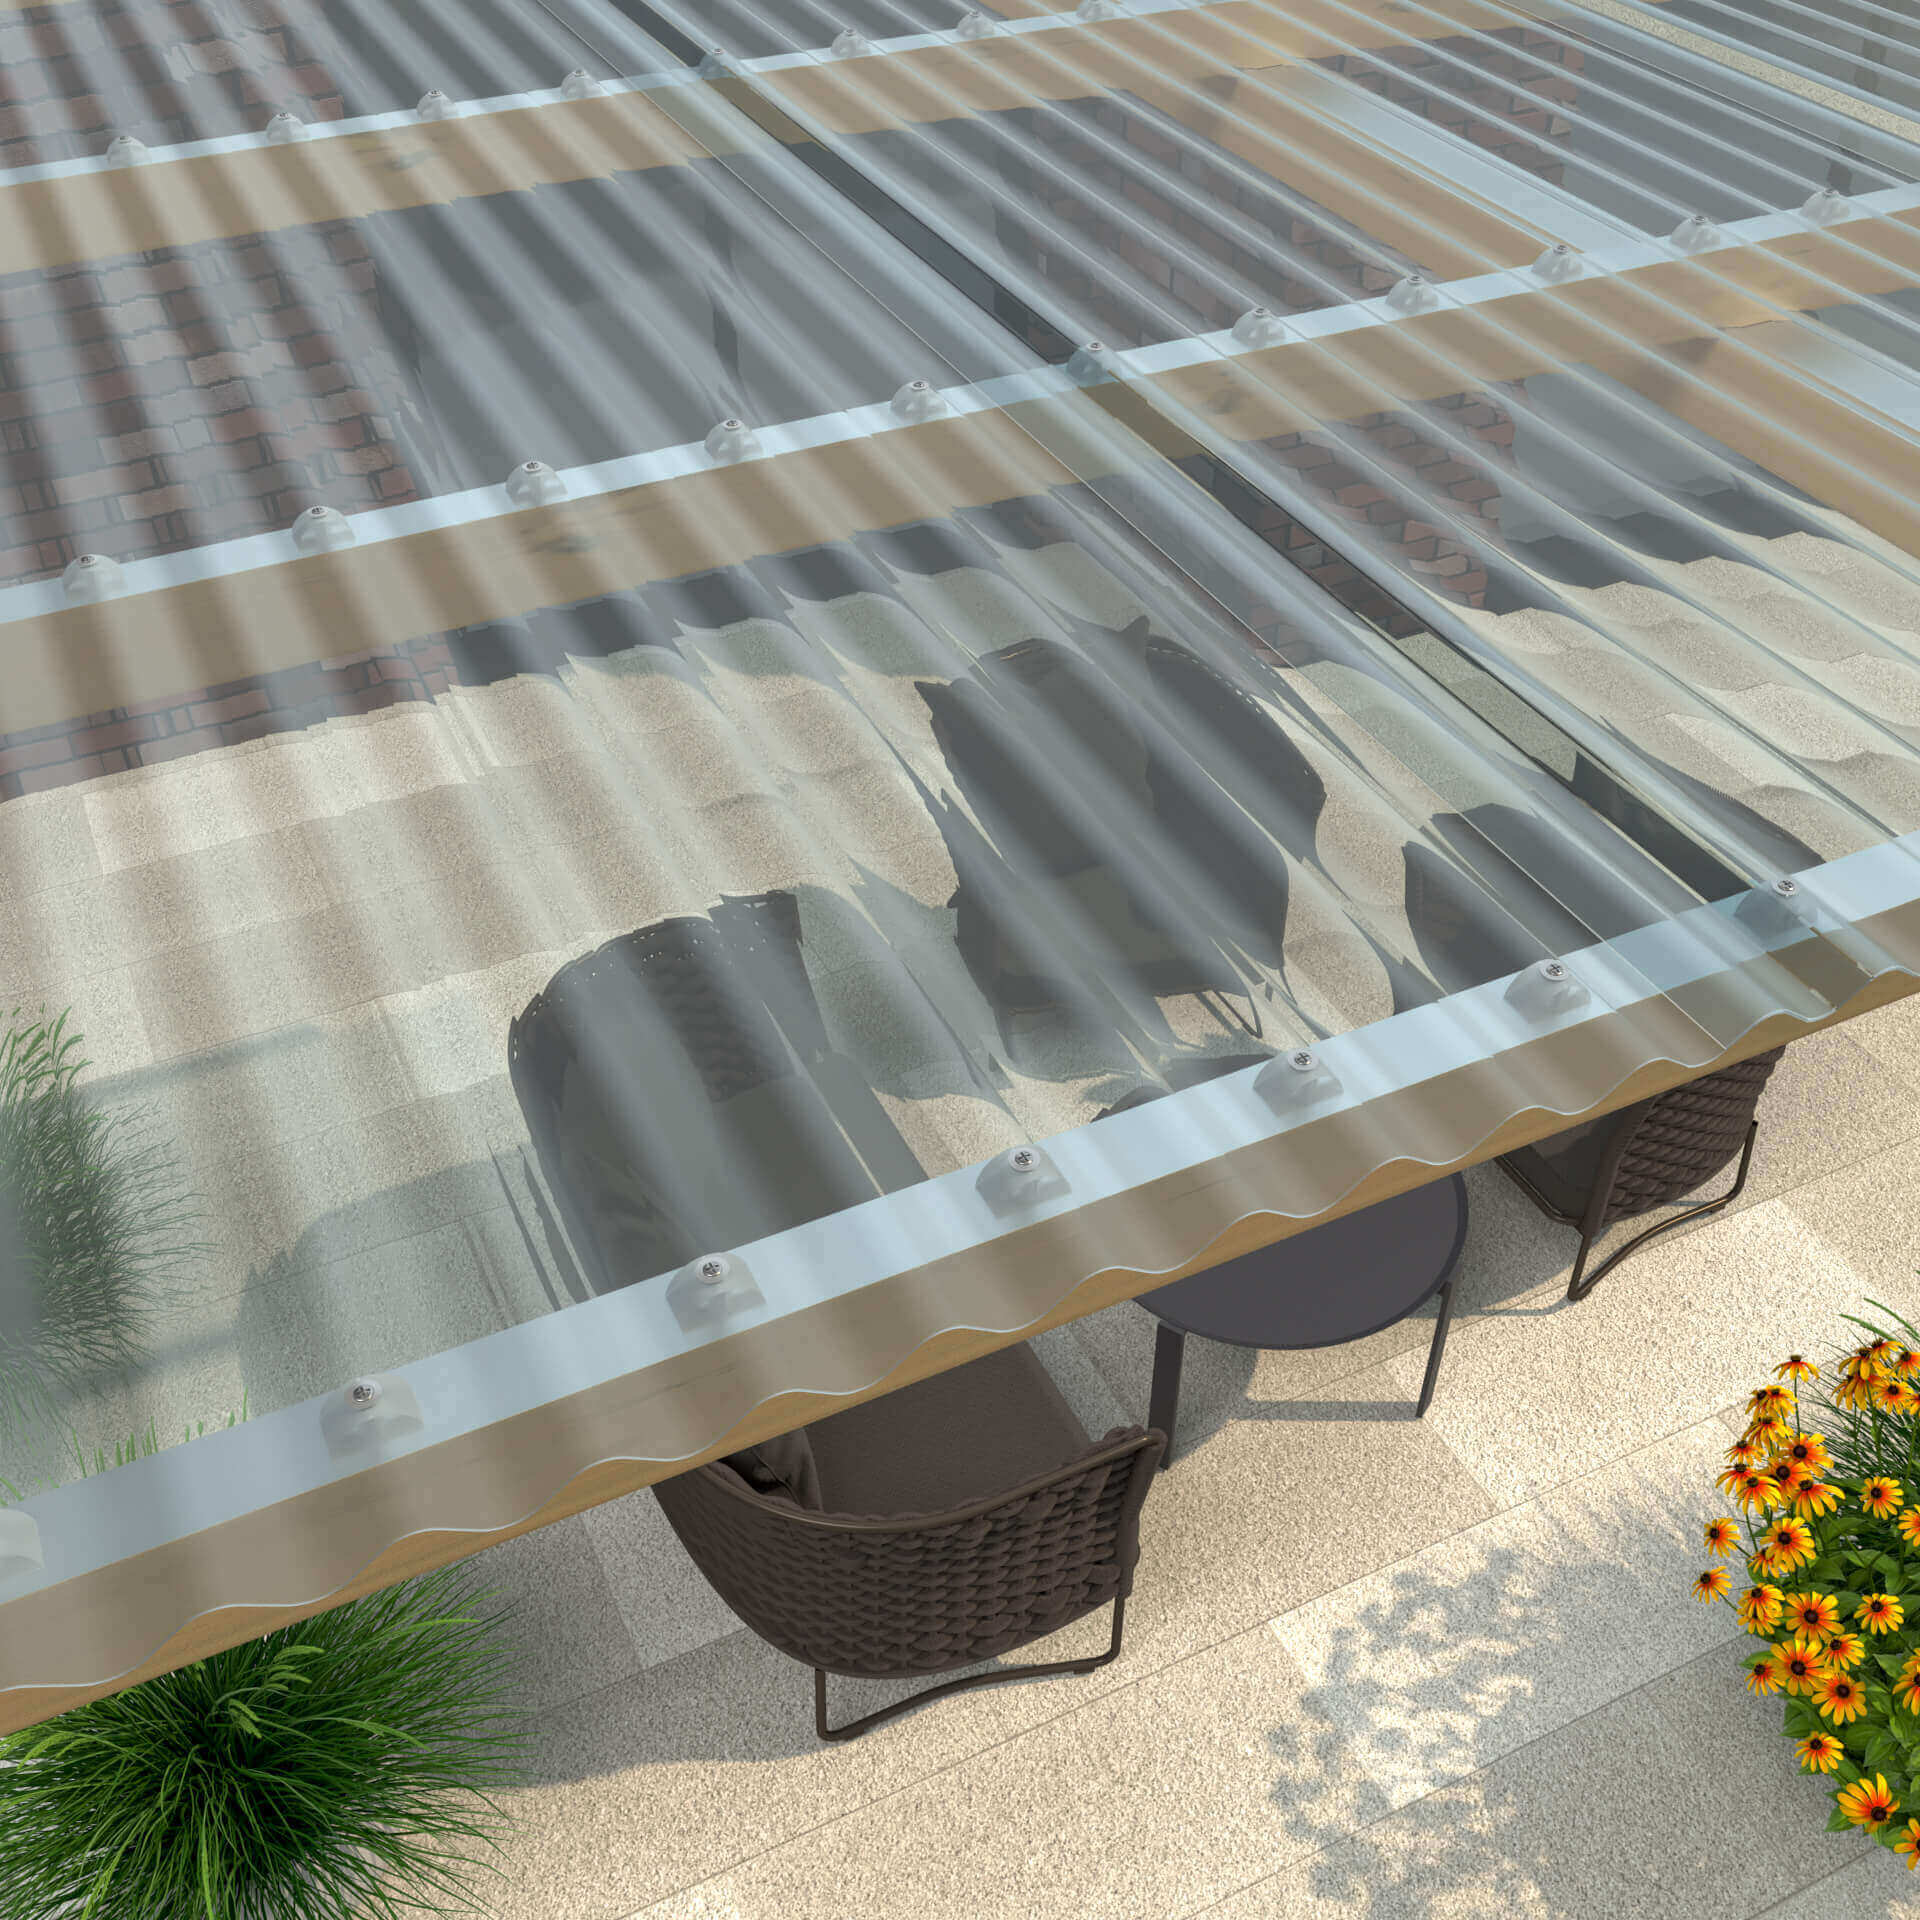 Robuste Wellplatten bieten optimalen Schutz für Terrassen, mit UV-Beständigkeit und hoher Wetterfestigkeit - ideal für ein gemütliches Outdoor-Ambiente